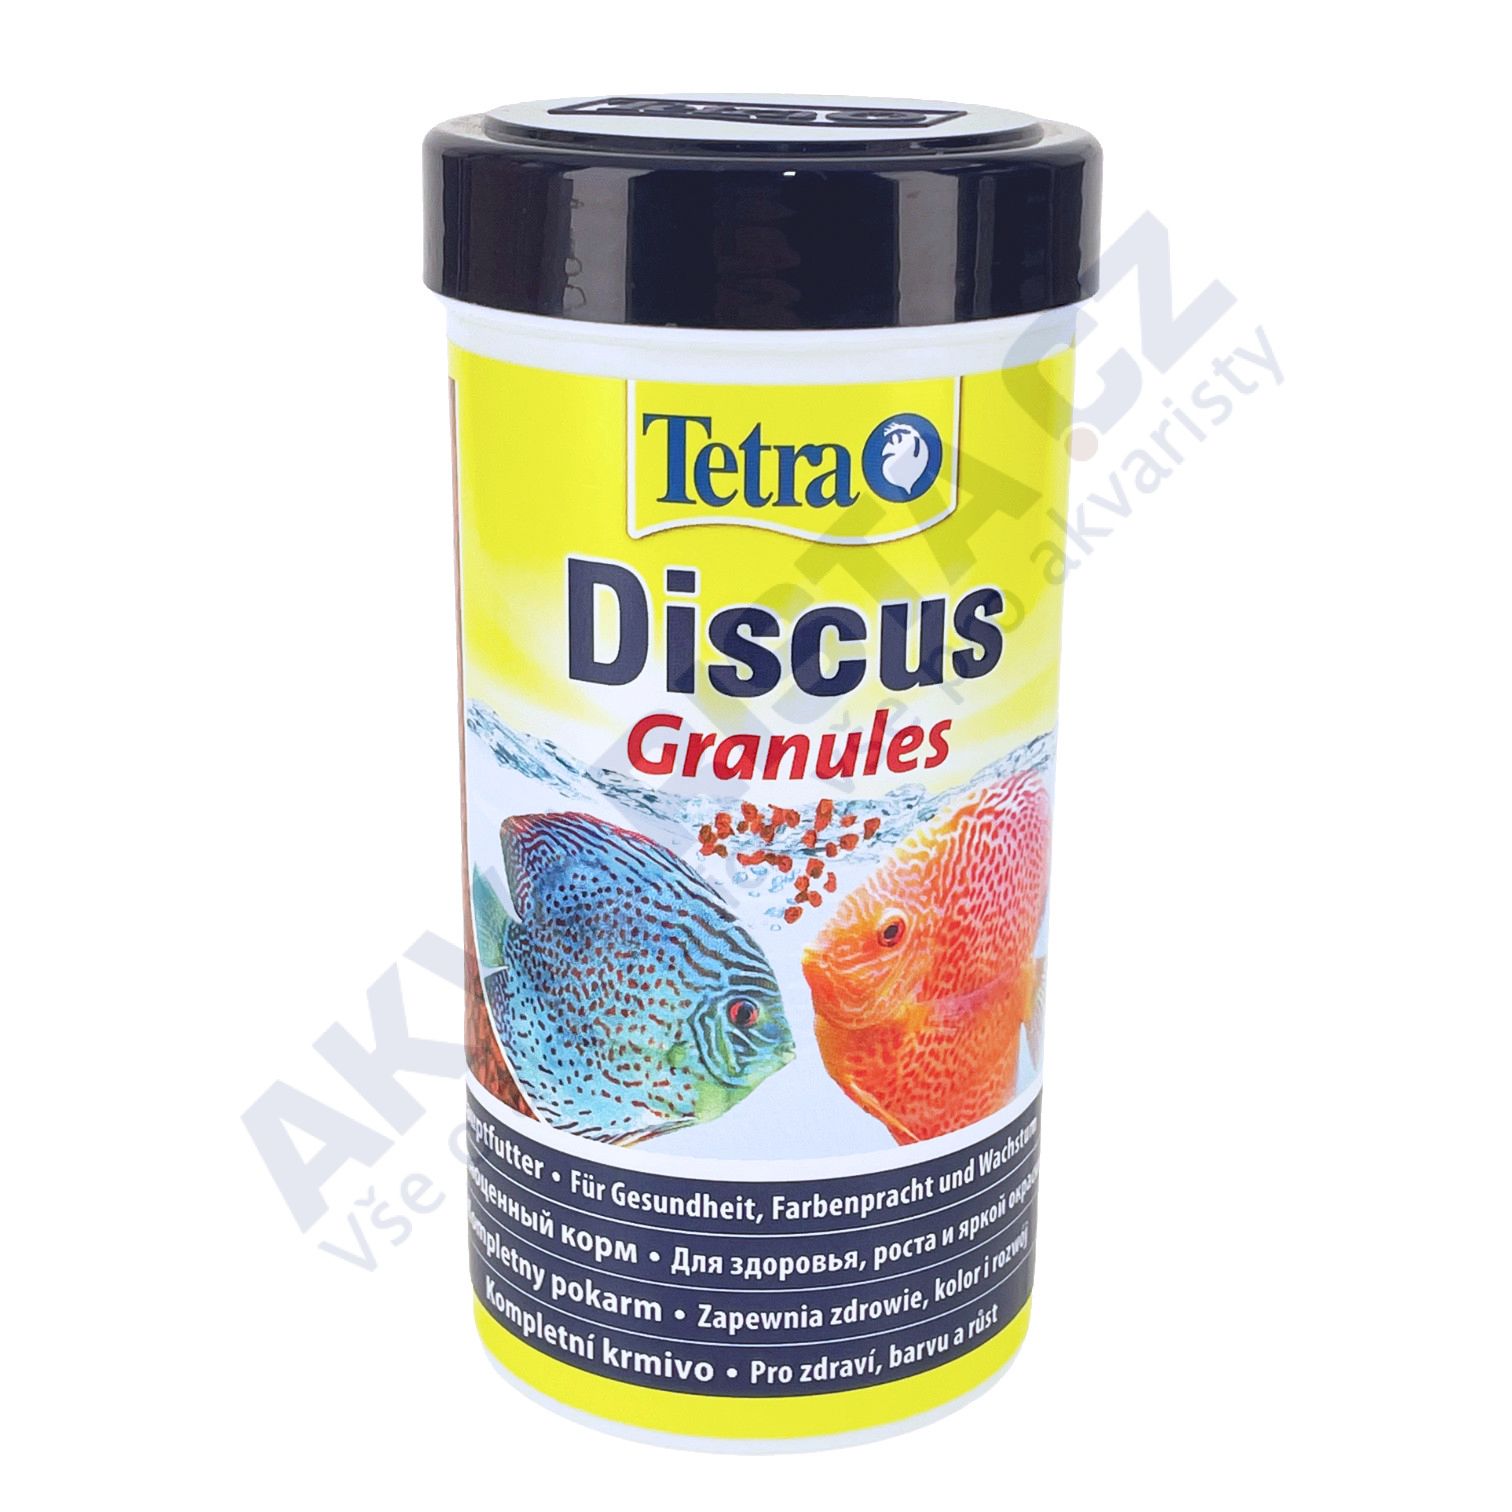 Tetra Discus granules 250ml